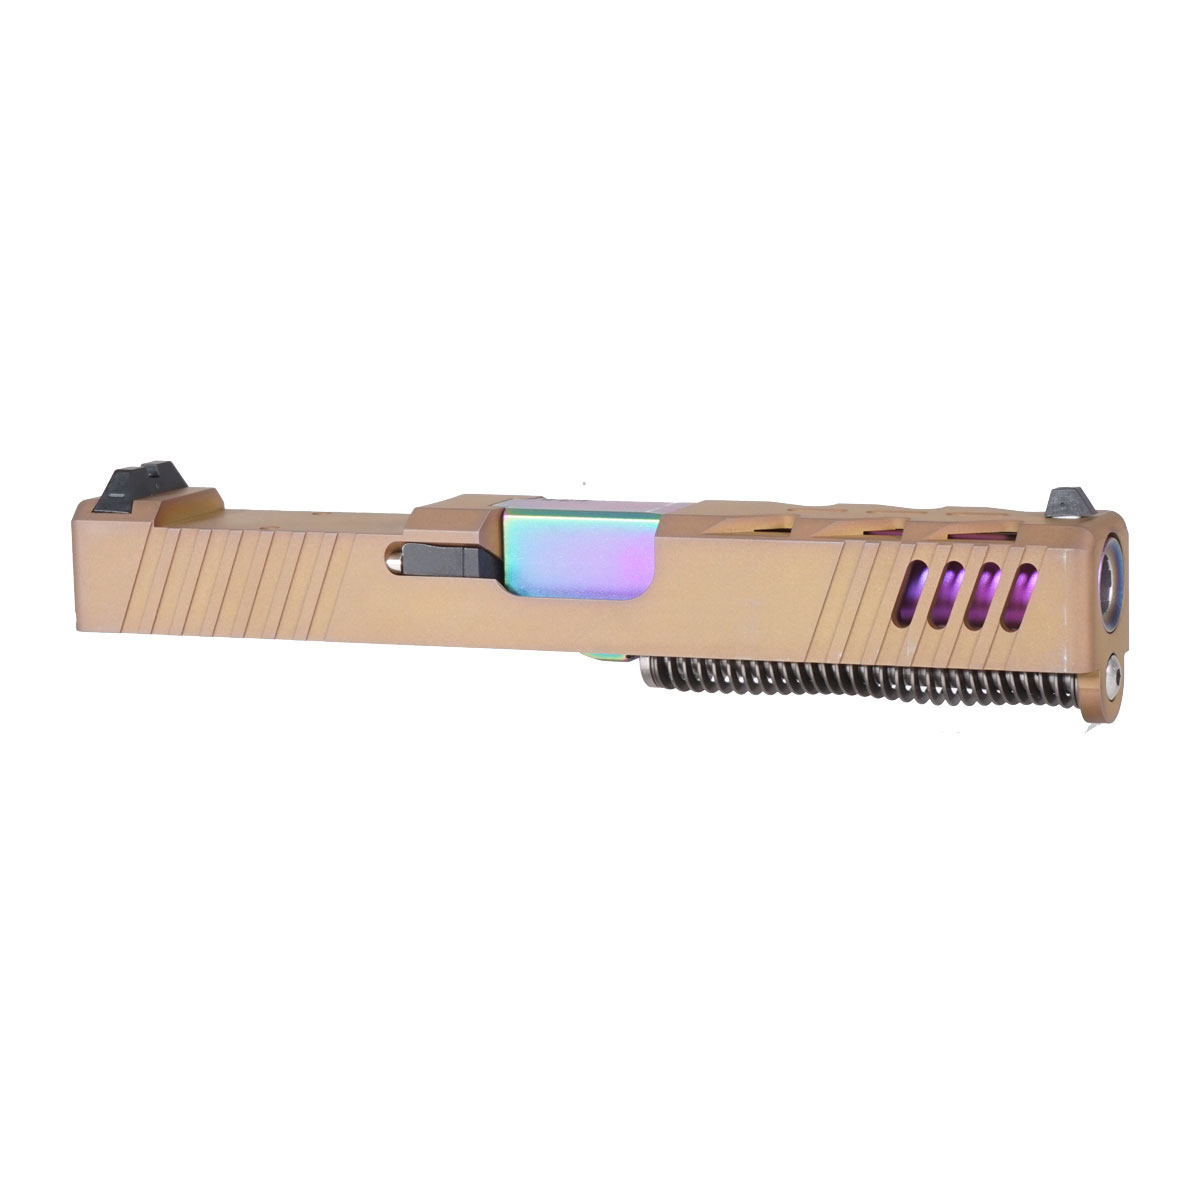 OTD 'Fluorescent Visions' 9mm Complete Slide Kit - Glock 19 Gen 1-3 Compatible